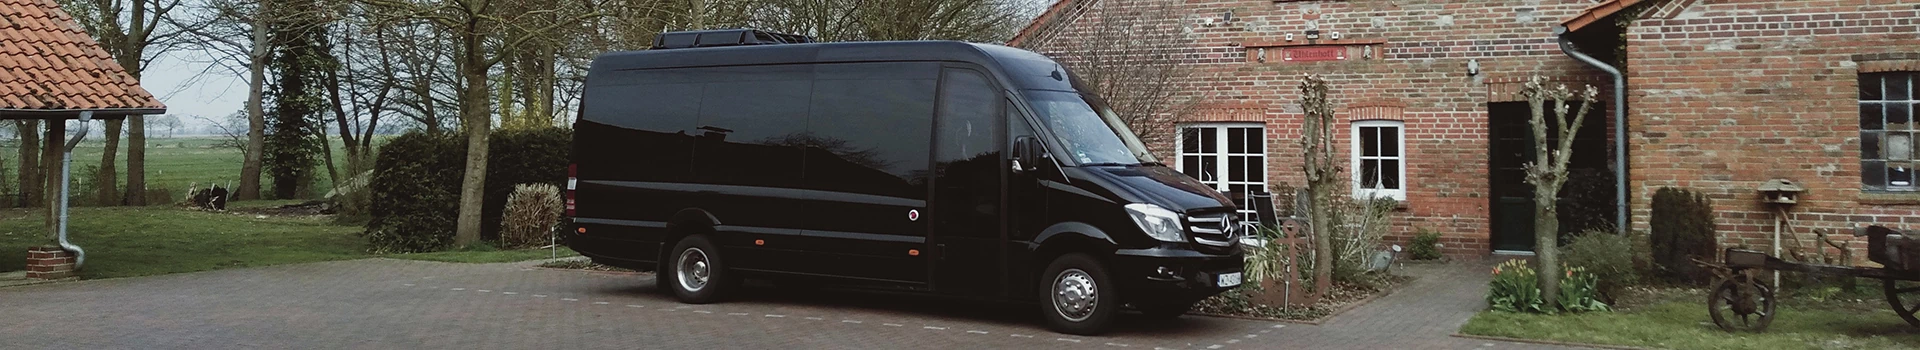 czarny bus zaparkowany przy domku